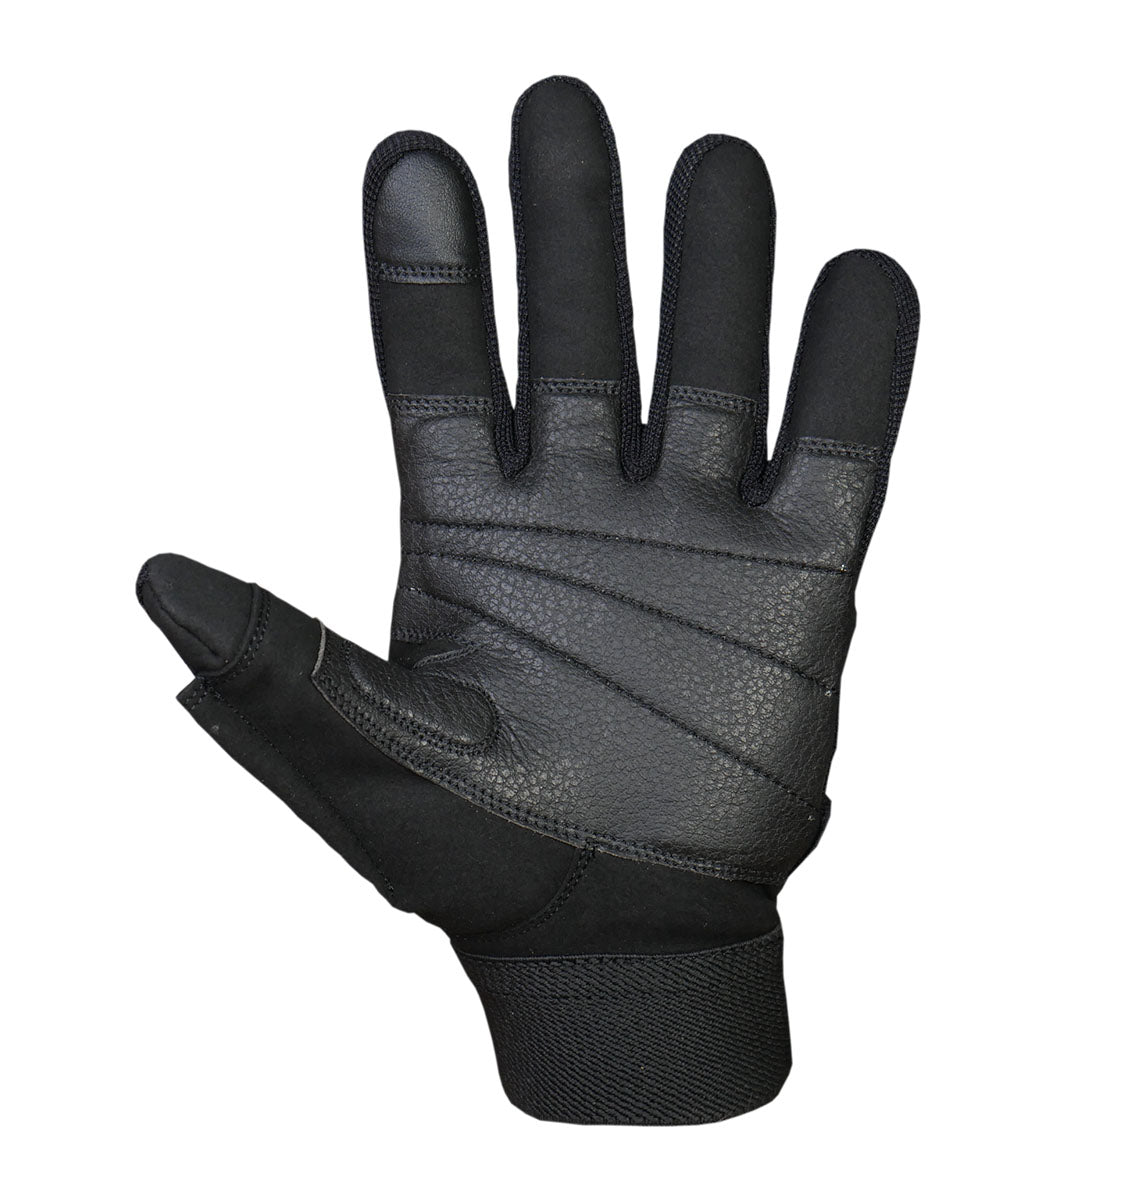 https://cdn.shopify.com/s/files/1/1548/5255/products/Schiek-Platinum-Series-Lifting-Gloves-Full-Finger-02.jpg?v=1635115198